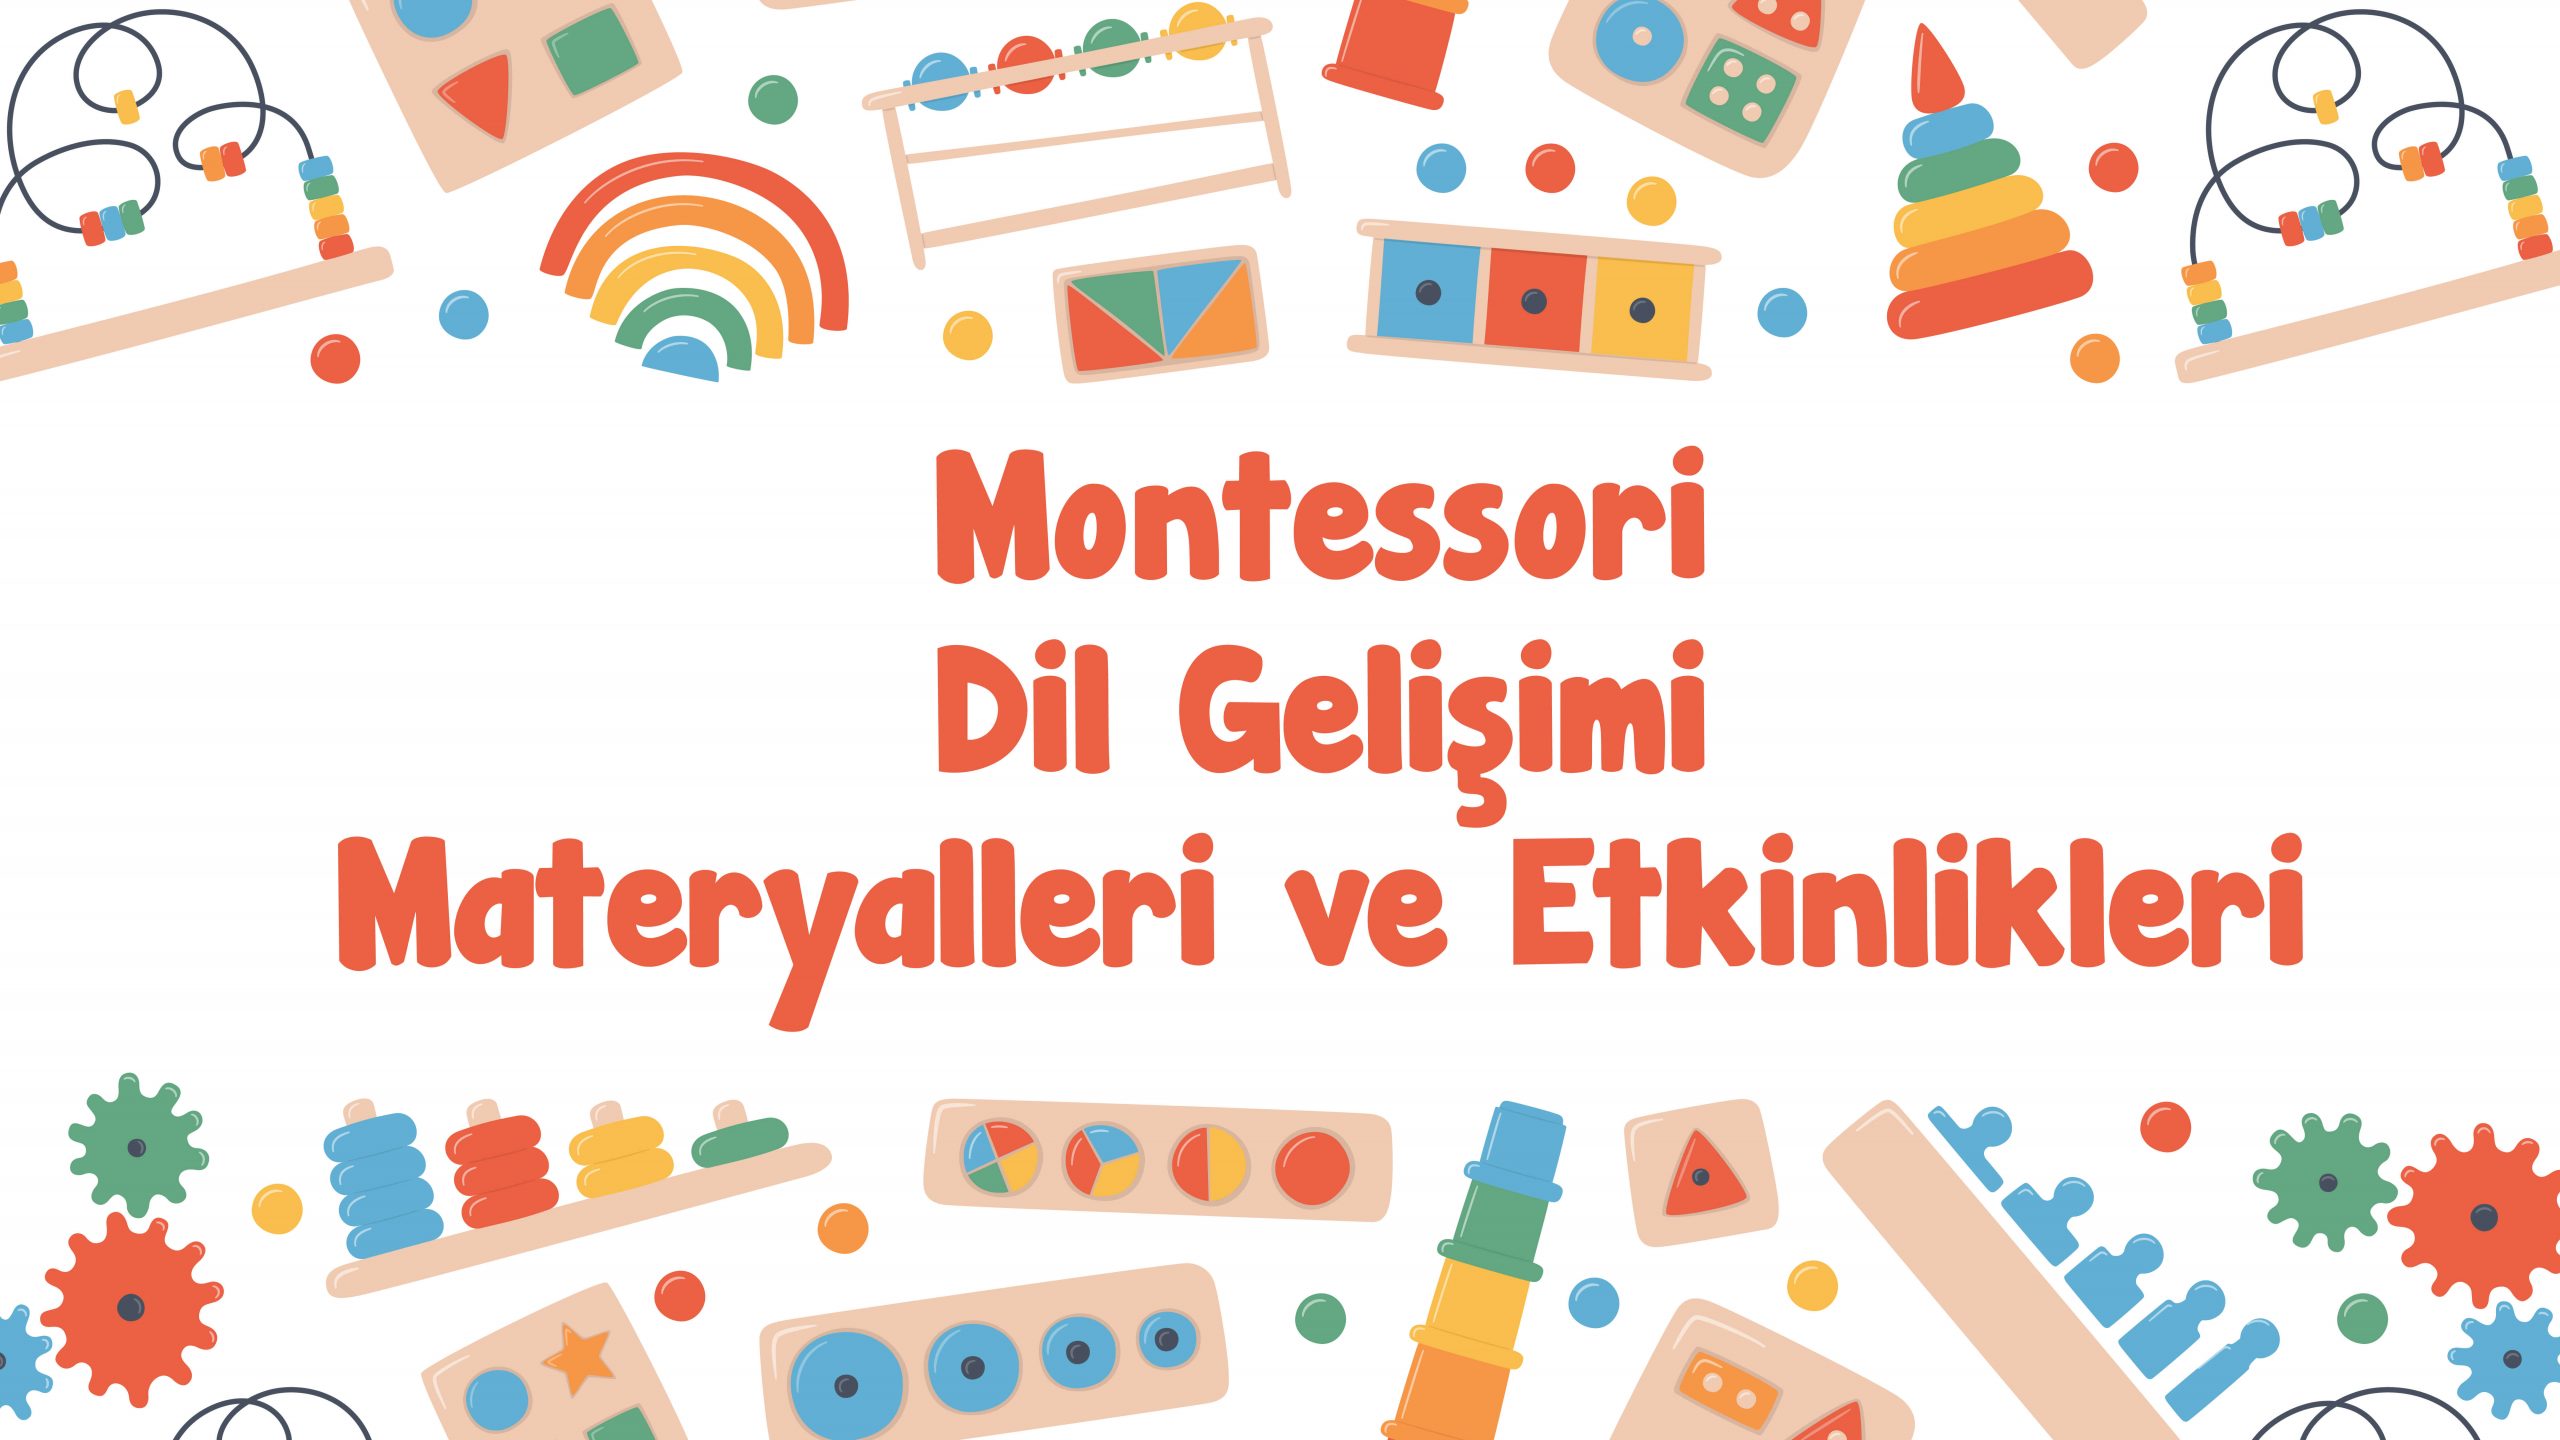 Montessori Dil Gelişimi Materyalleri ve Etkinlikleri